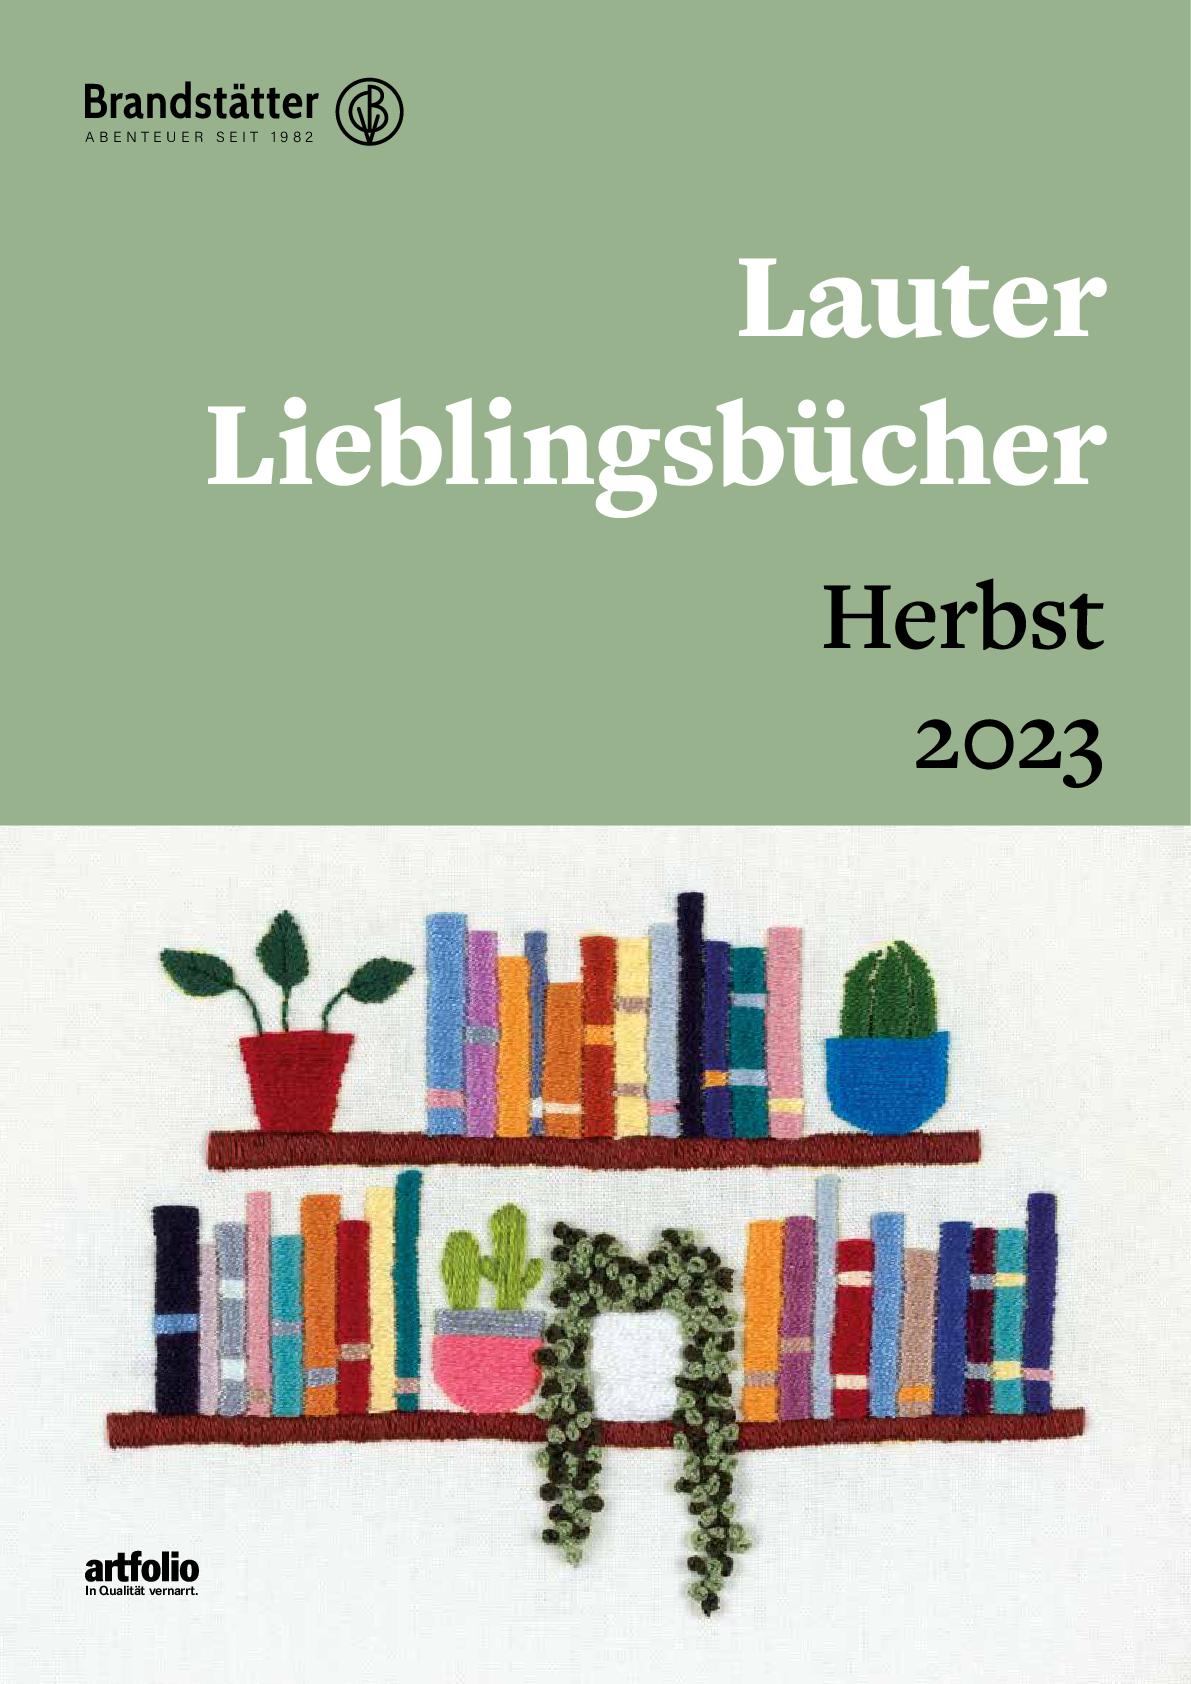 Brandstätter Verlag